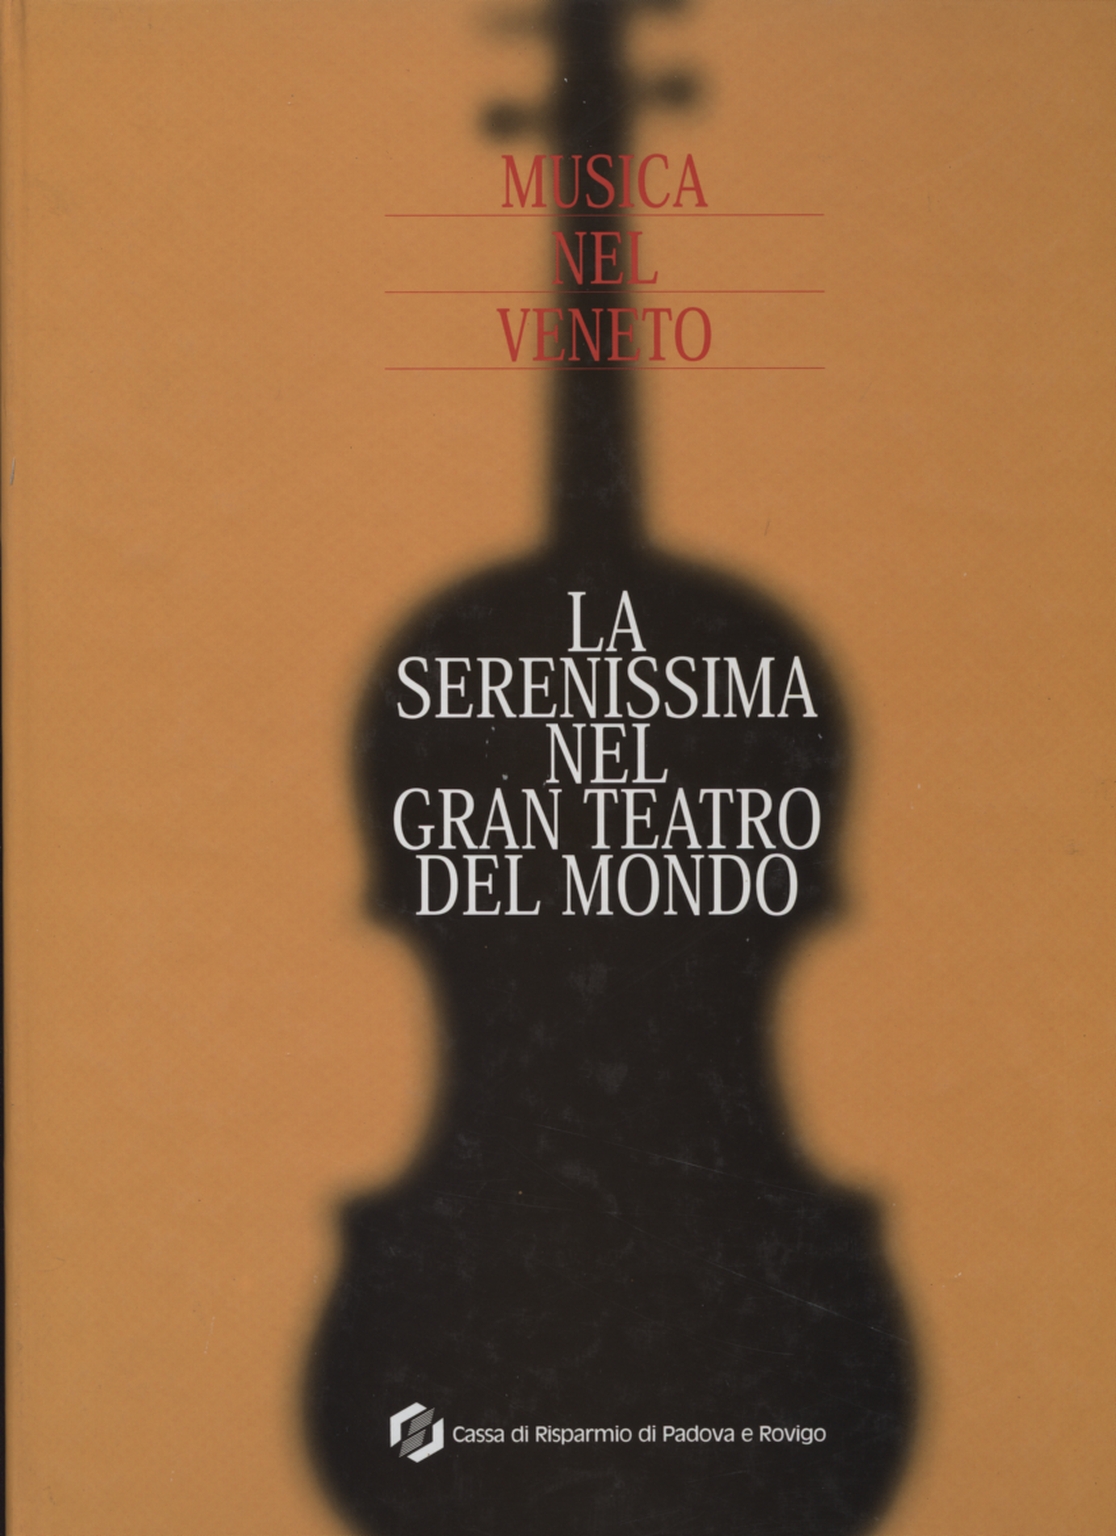 La serenissima-the grand theatre of the world (With CD), Massimo Rolando Zegna